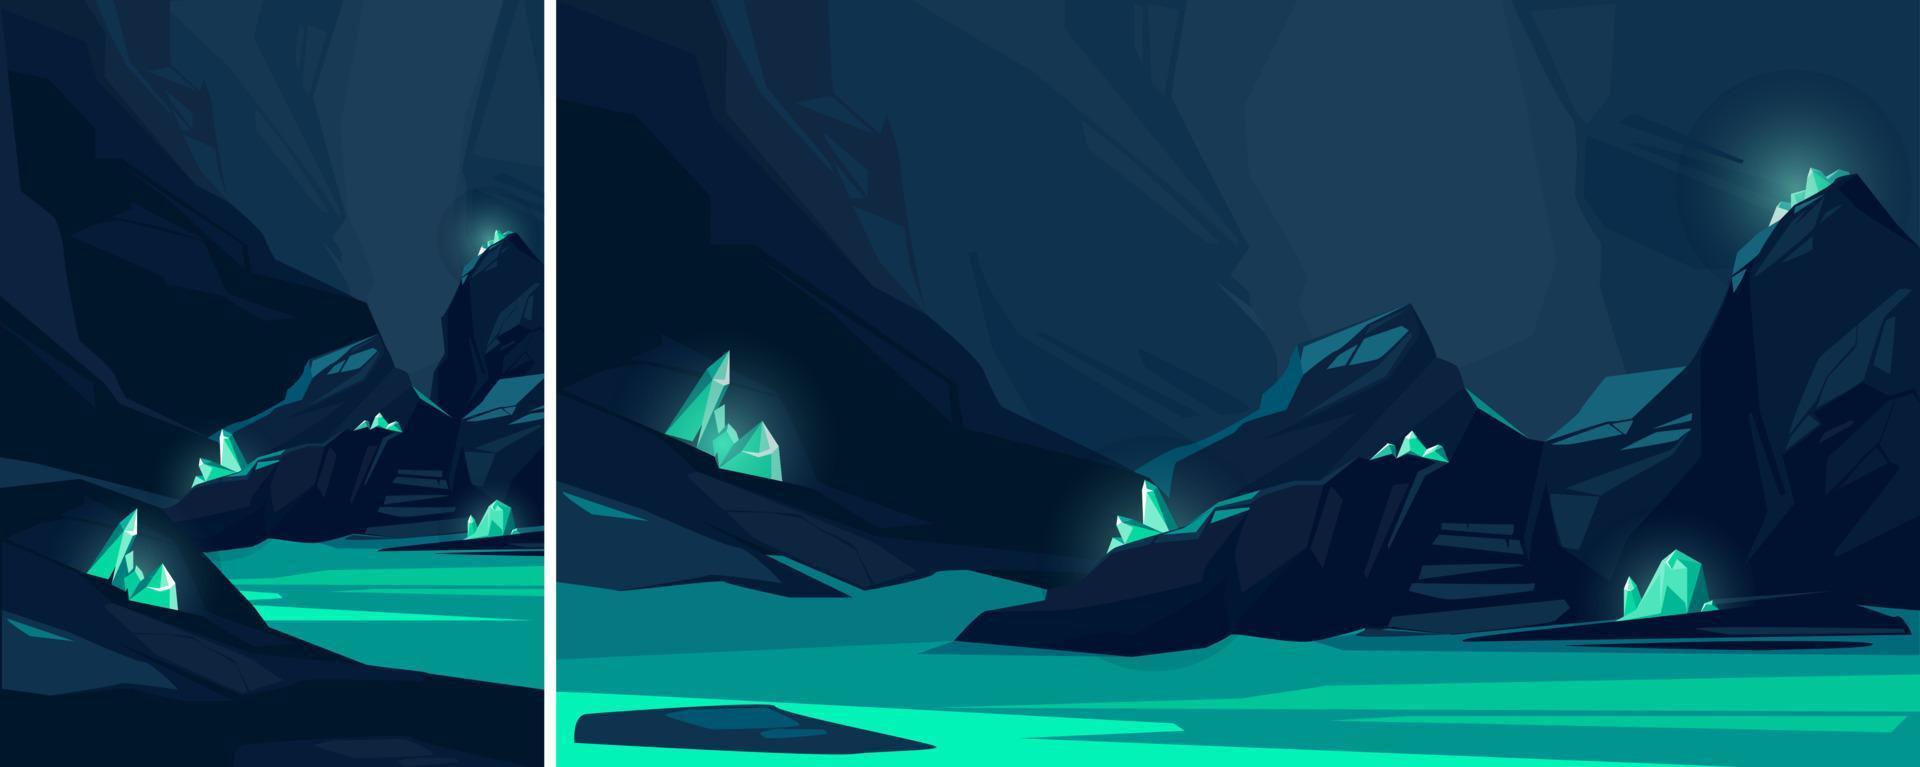 cueva con cristales turquesas. ubicación subterránea en diferentes formatos. vector